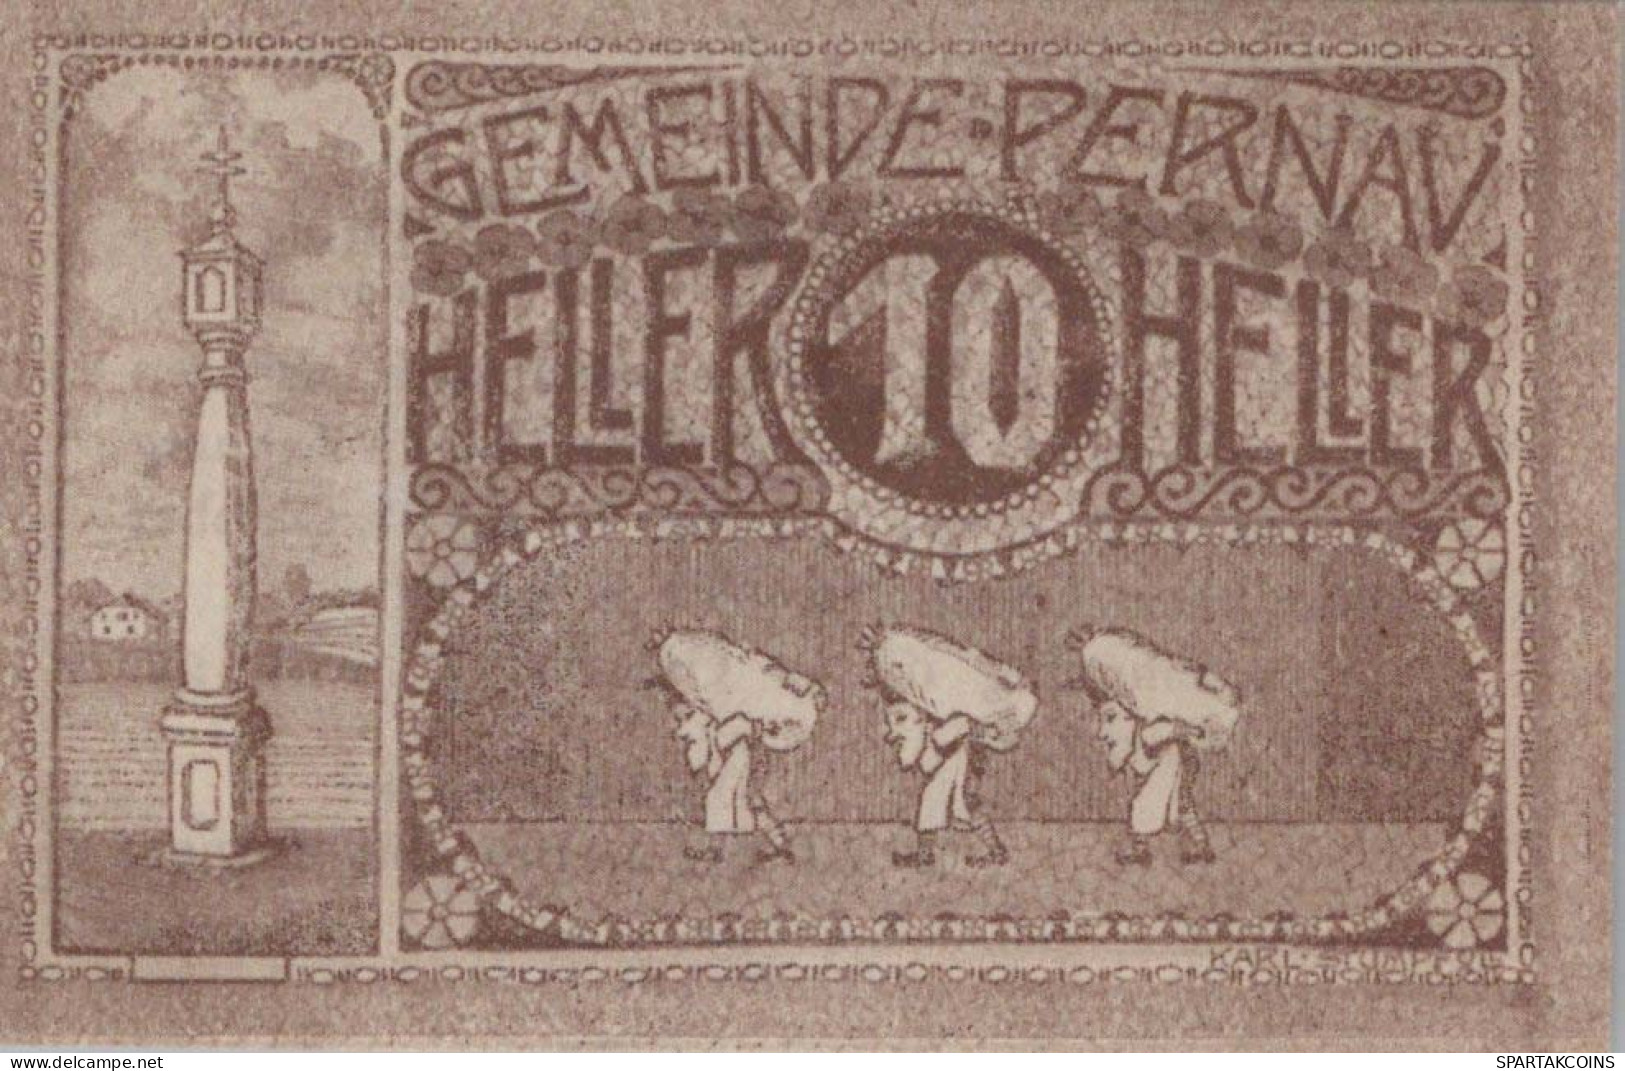 10 HELLER 1920 Stadt PERNAU Oberösterreich Österreich Notgeld Papiergeld Banknote #PG658 - [11] Local Banknote Issues